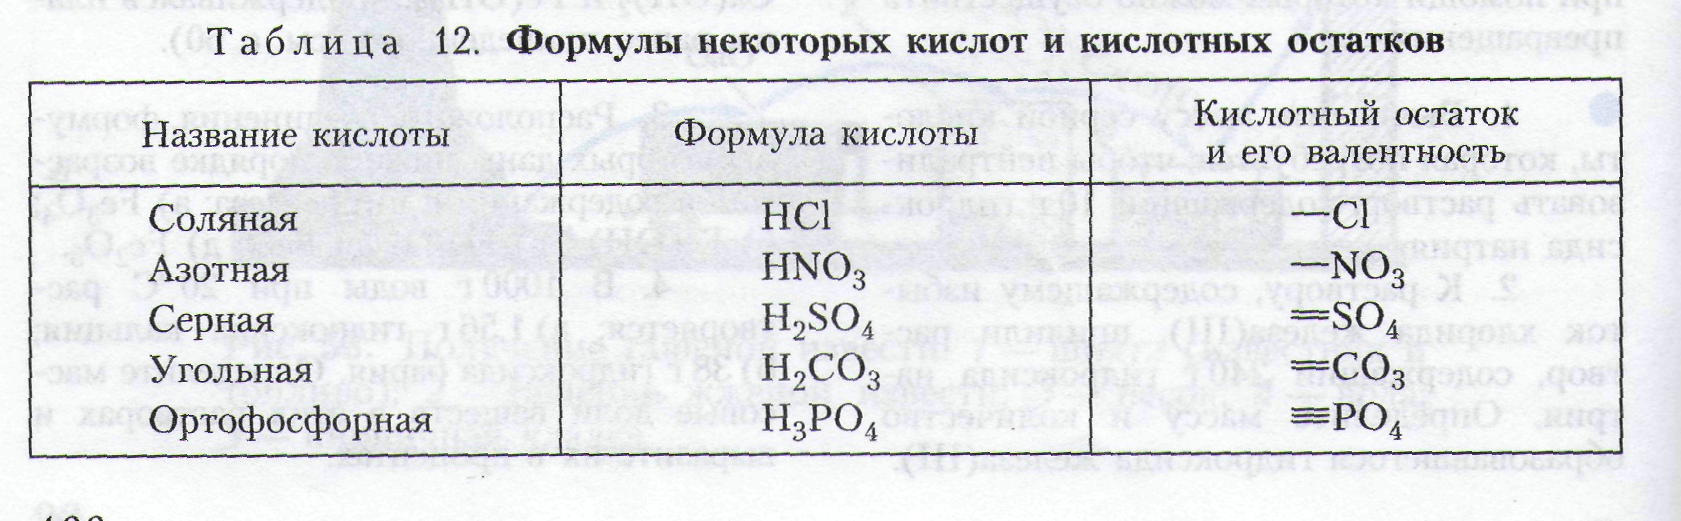 Формулы 5 сложных кислот. Формулы некоторых кислот и кислотных остатков таблица 8 класс. Формулы некоторых кислот и кислотных остатков таблица. Формулы кислотных остатков таблица. Формулы некоторых кислот и кислотных остатков 8 класс химия таблица.